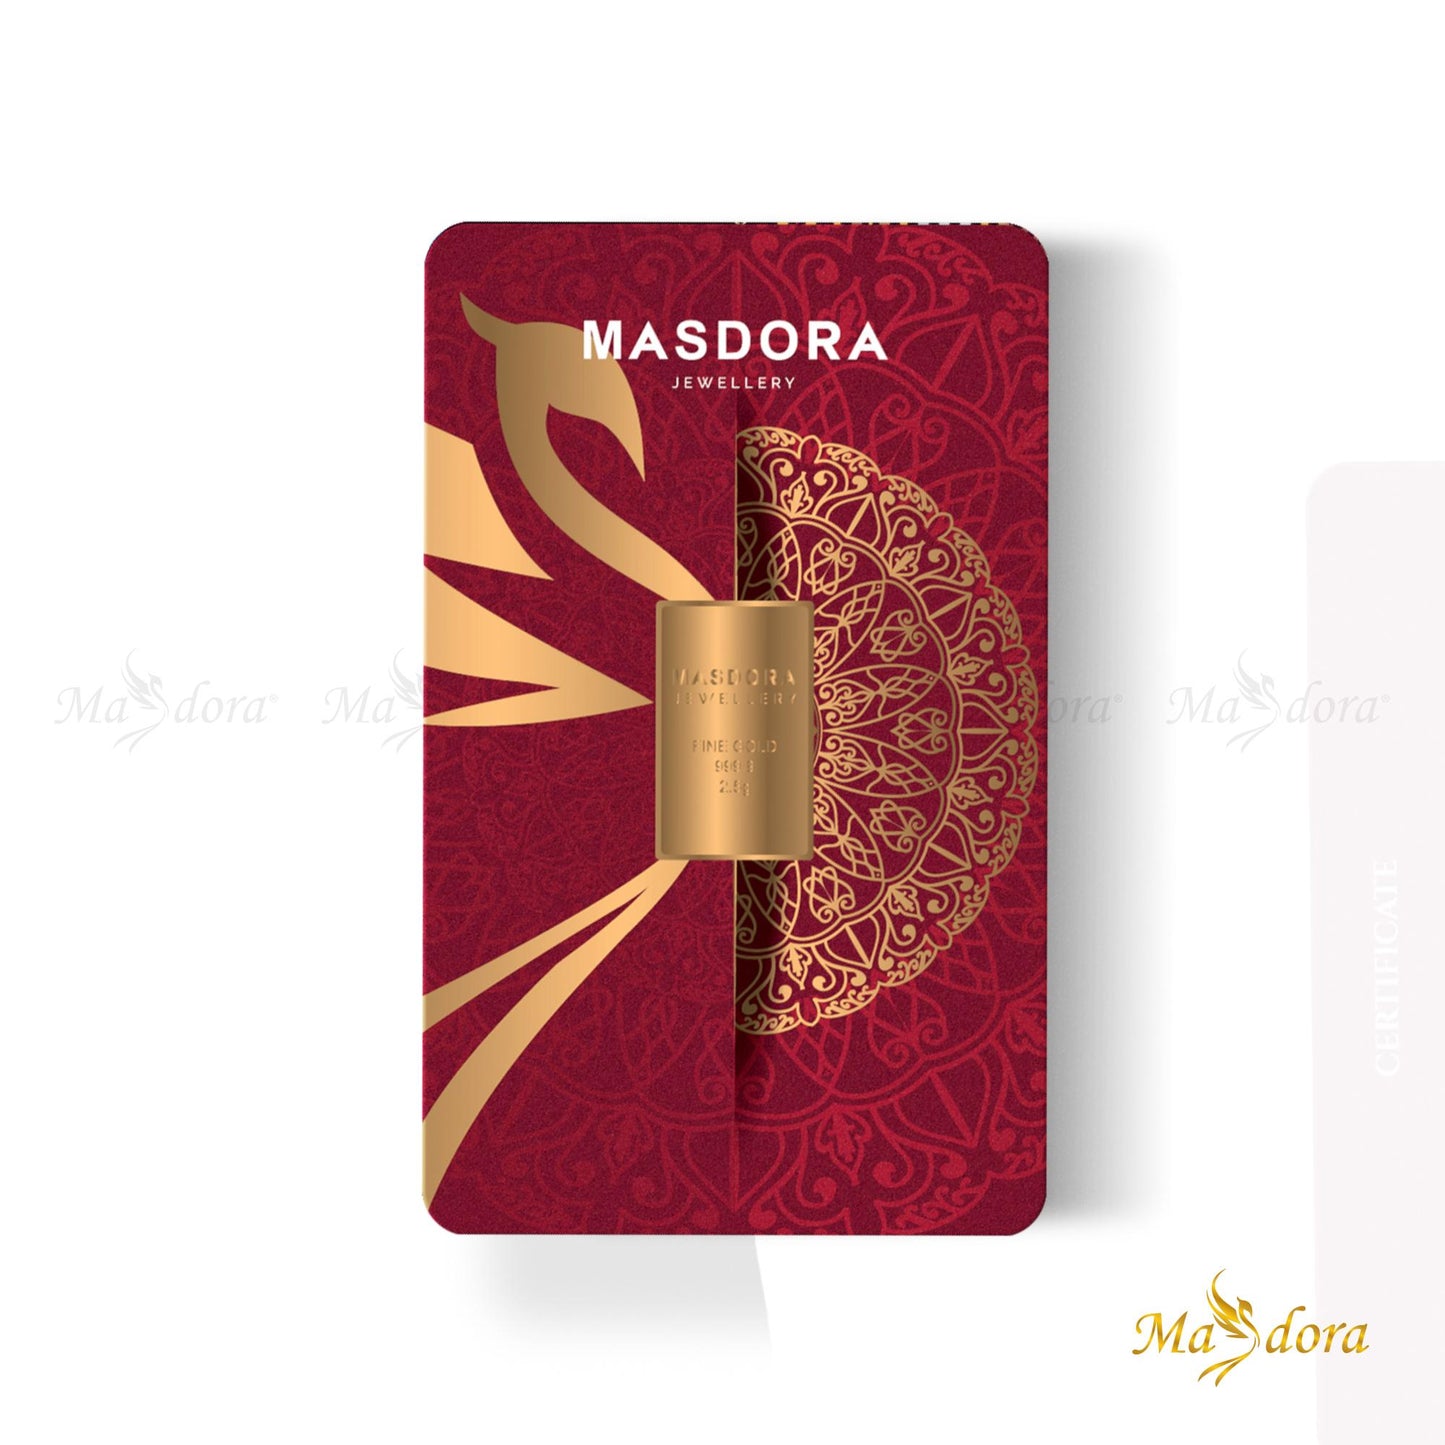 Masdora Signature Gold Bullion Bar 2.5g (Emas 999.9)